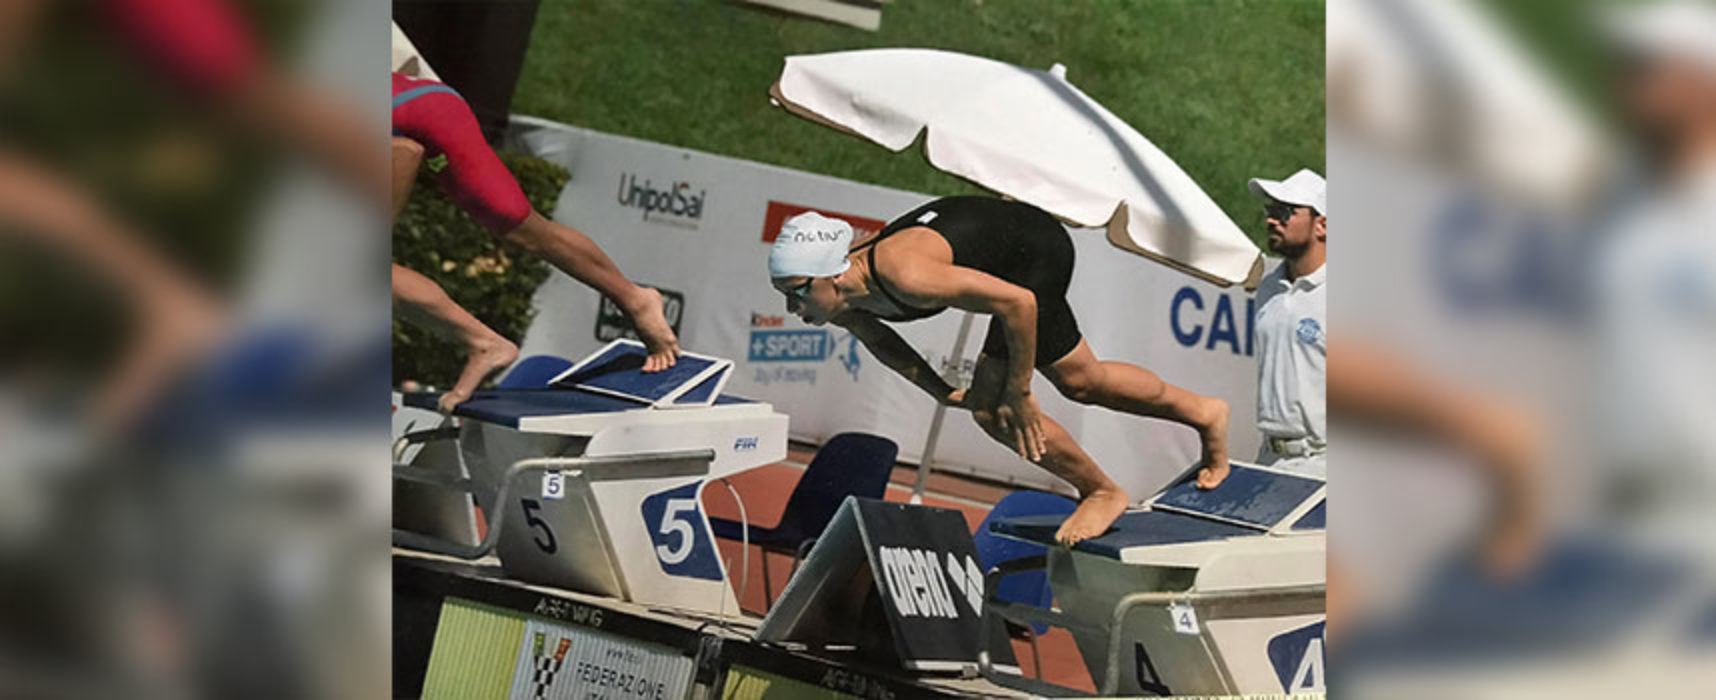 Campionati assoluti di nuoto: ottimo piazzamento per la biscegliese Napoletano nella finale dei 50 stile libero